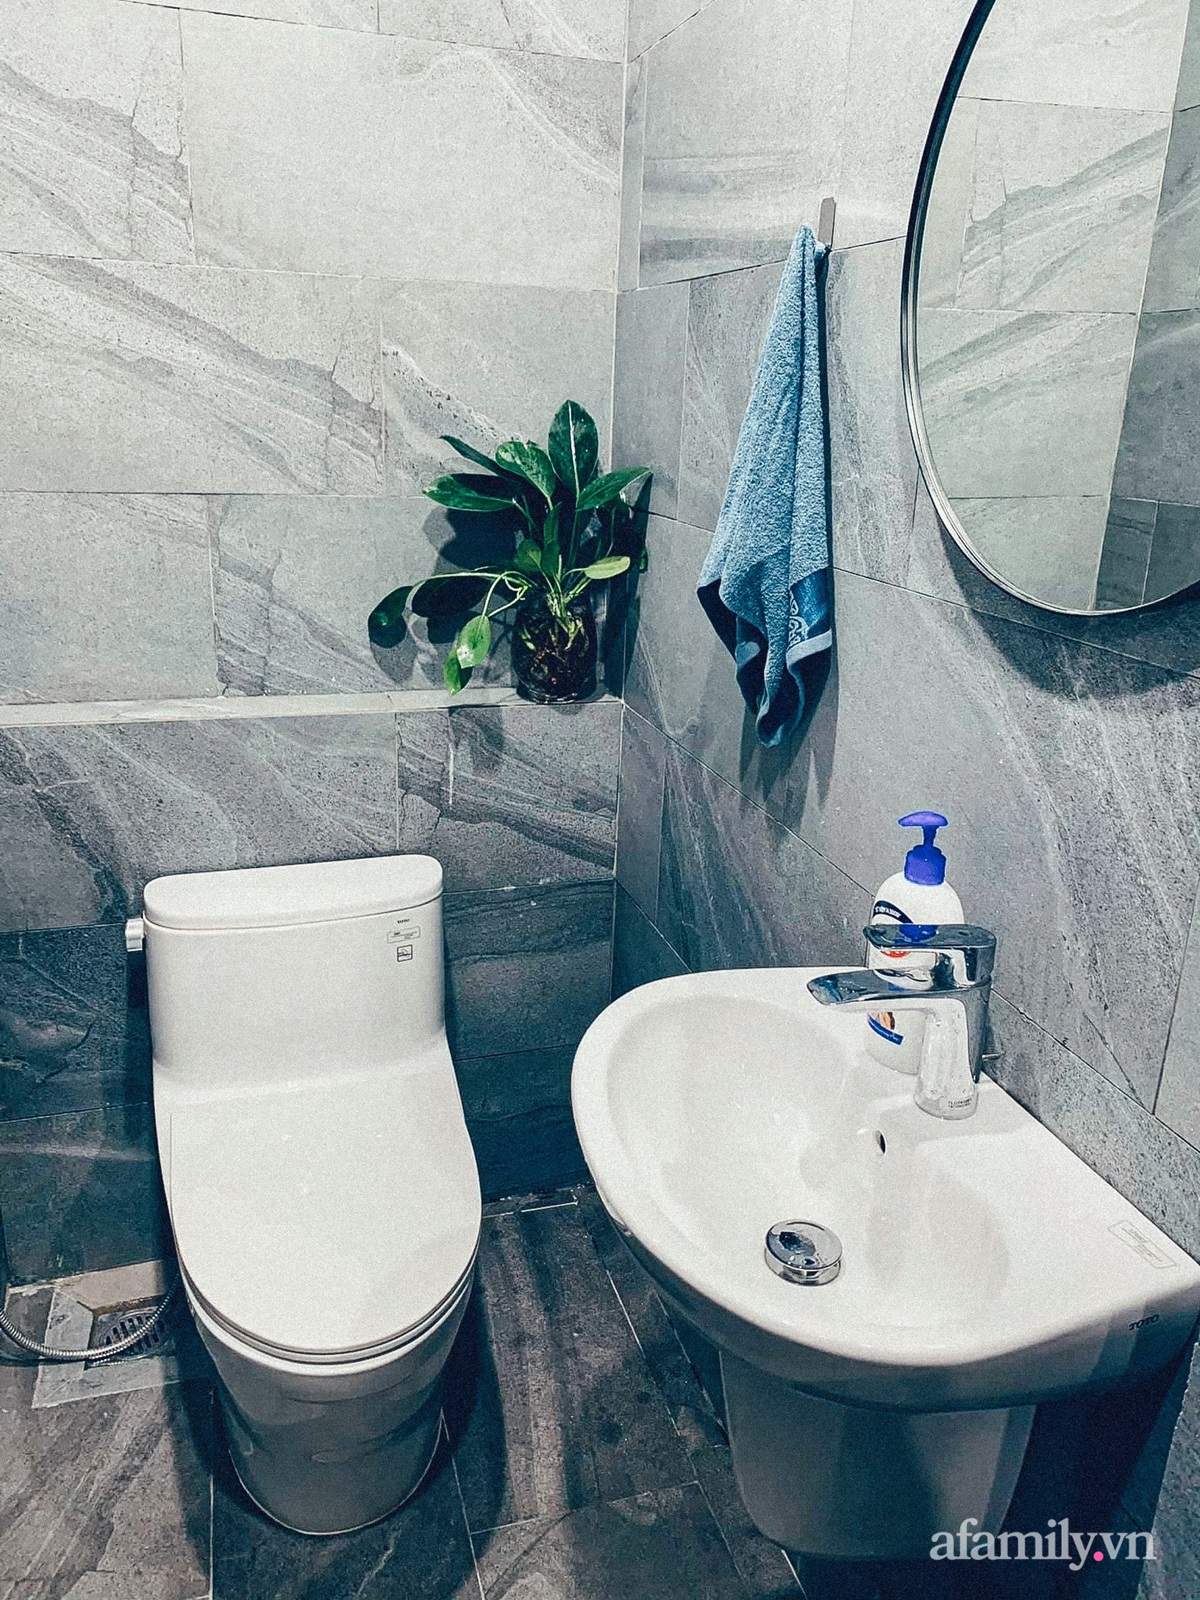 Bóc giá phòng tắm sang chảnh của cặp vợ chồng chủ trương chọn đồ chất lượng tốt để tiết kiệm ở Lạng Sơn - Ảnh 15.